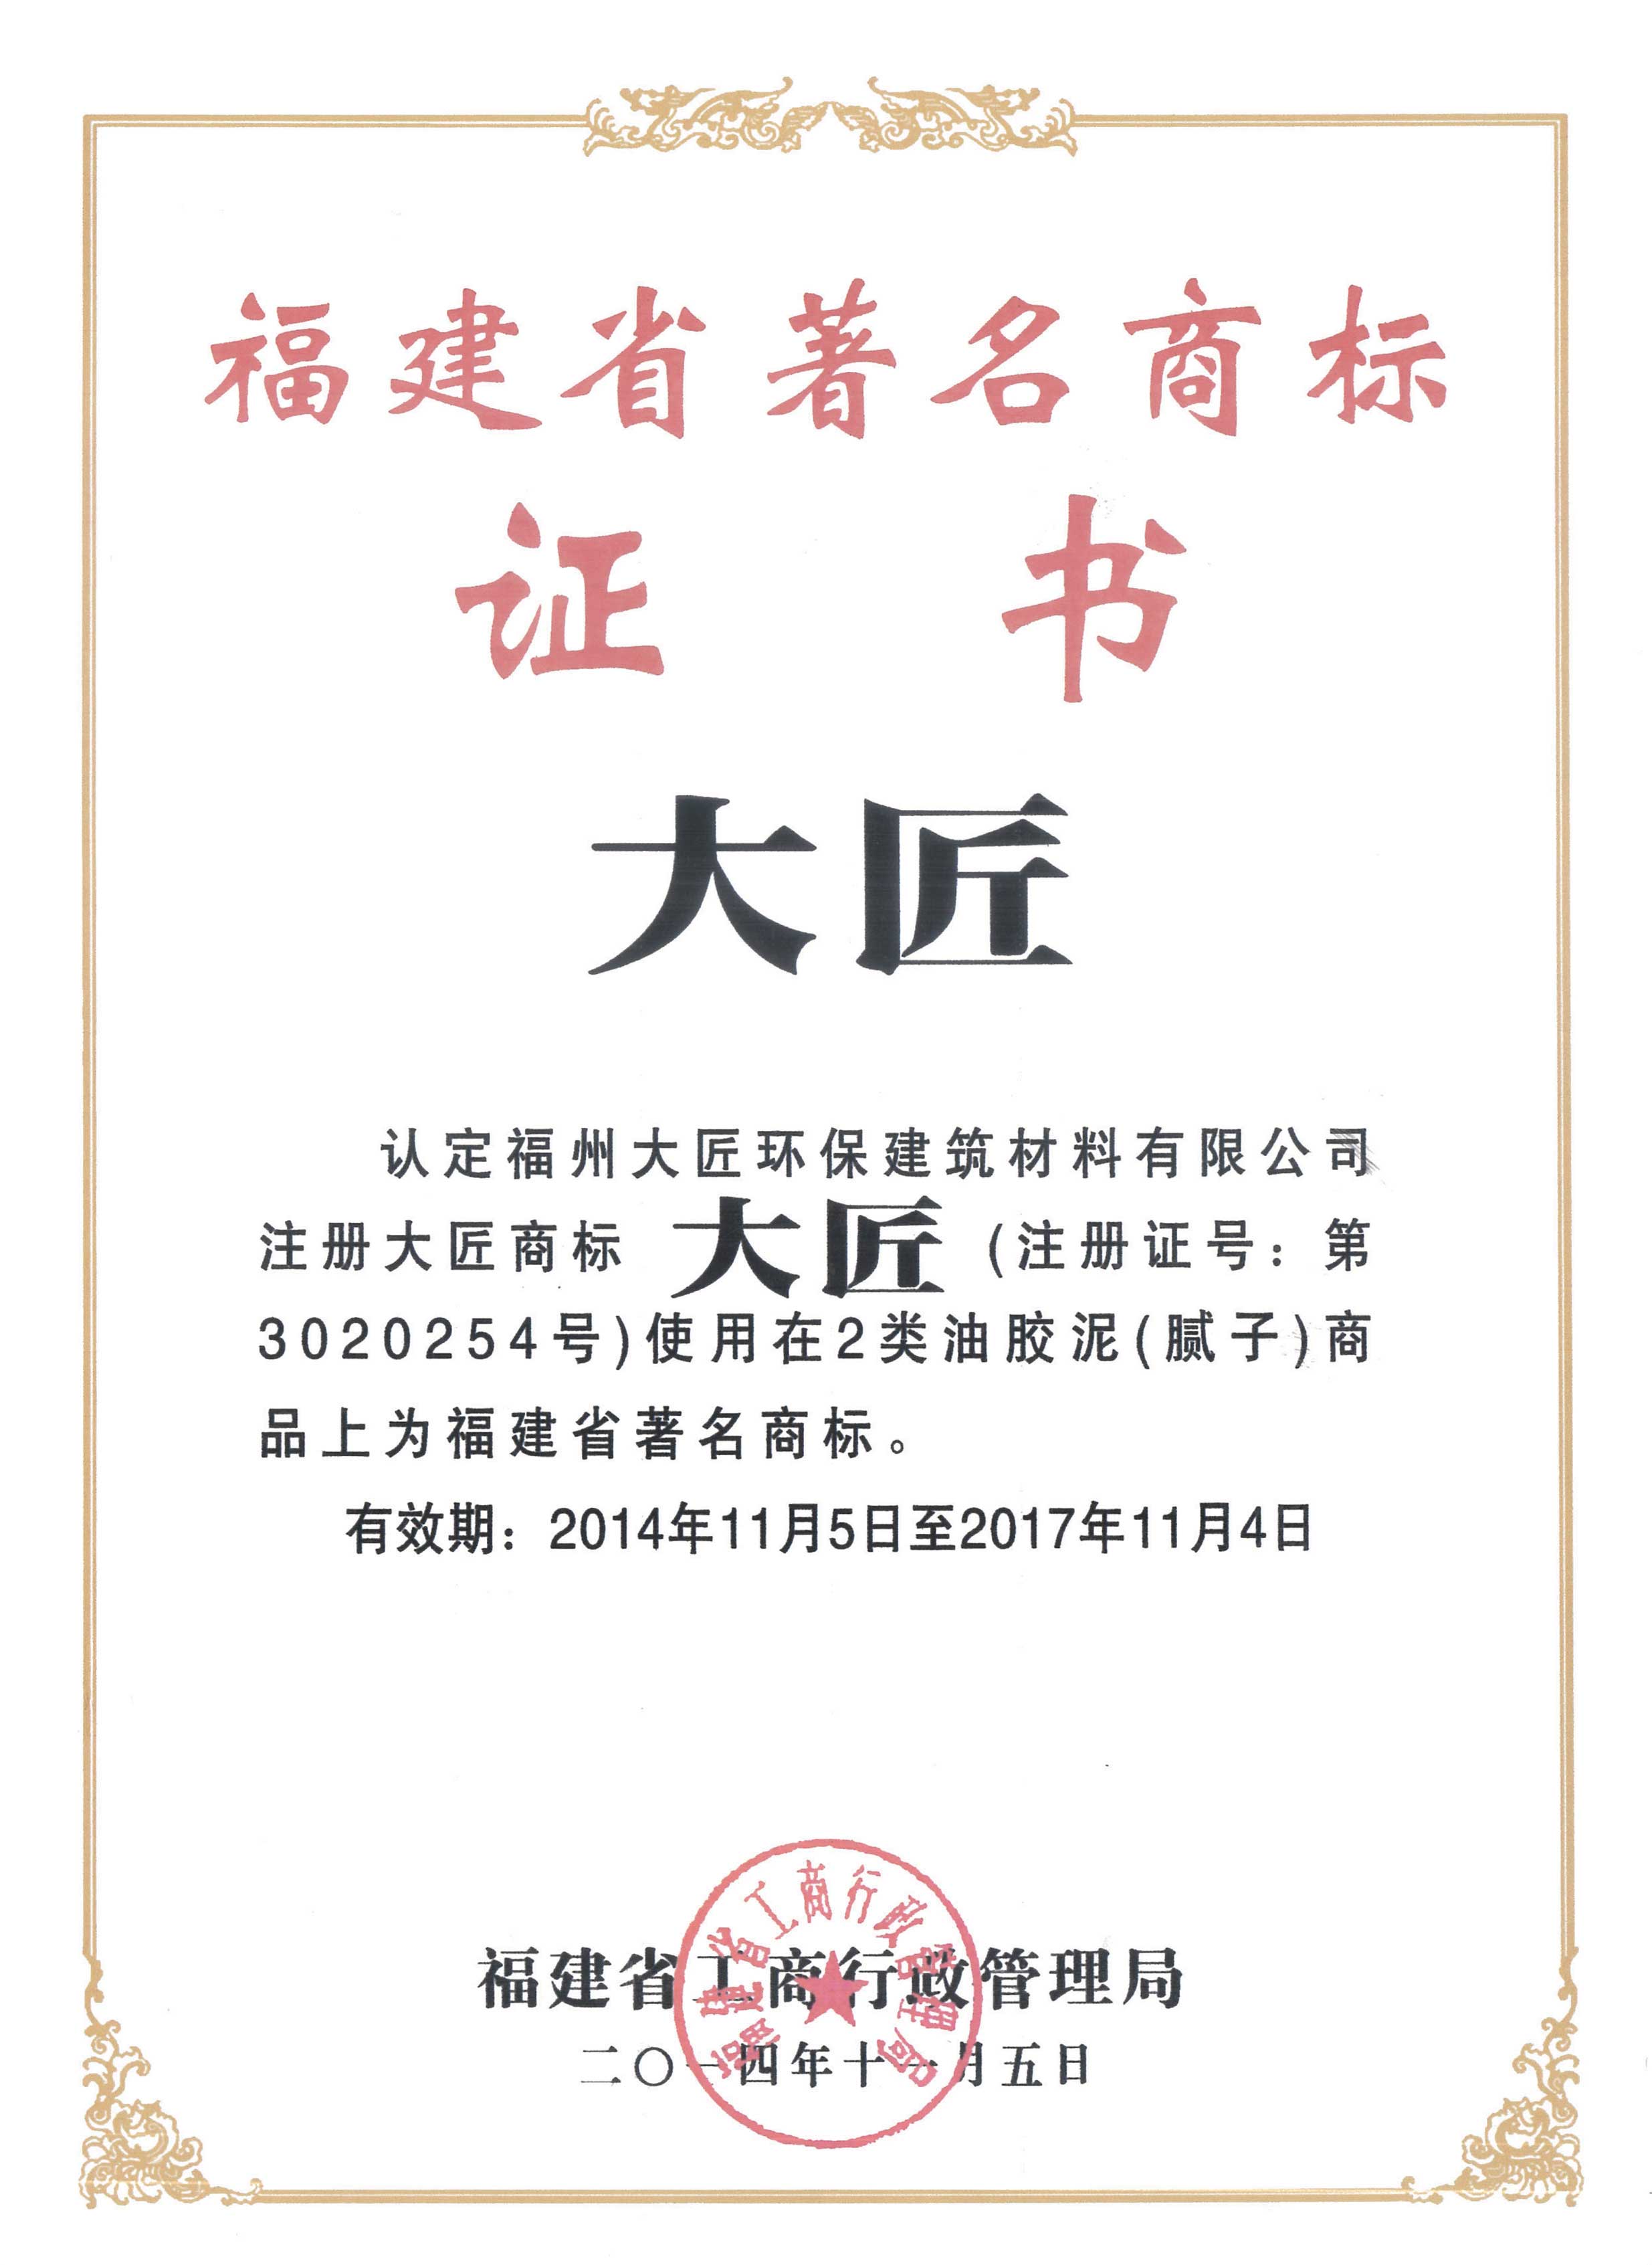 2014年曾荣获福建省着名商标